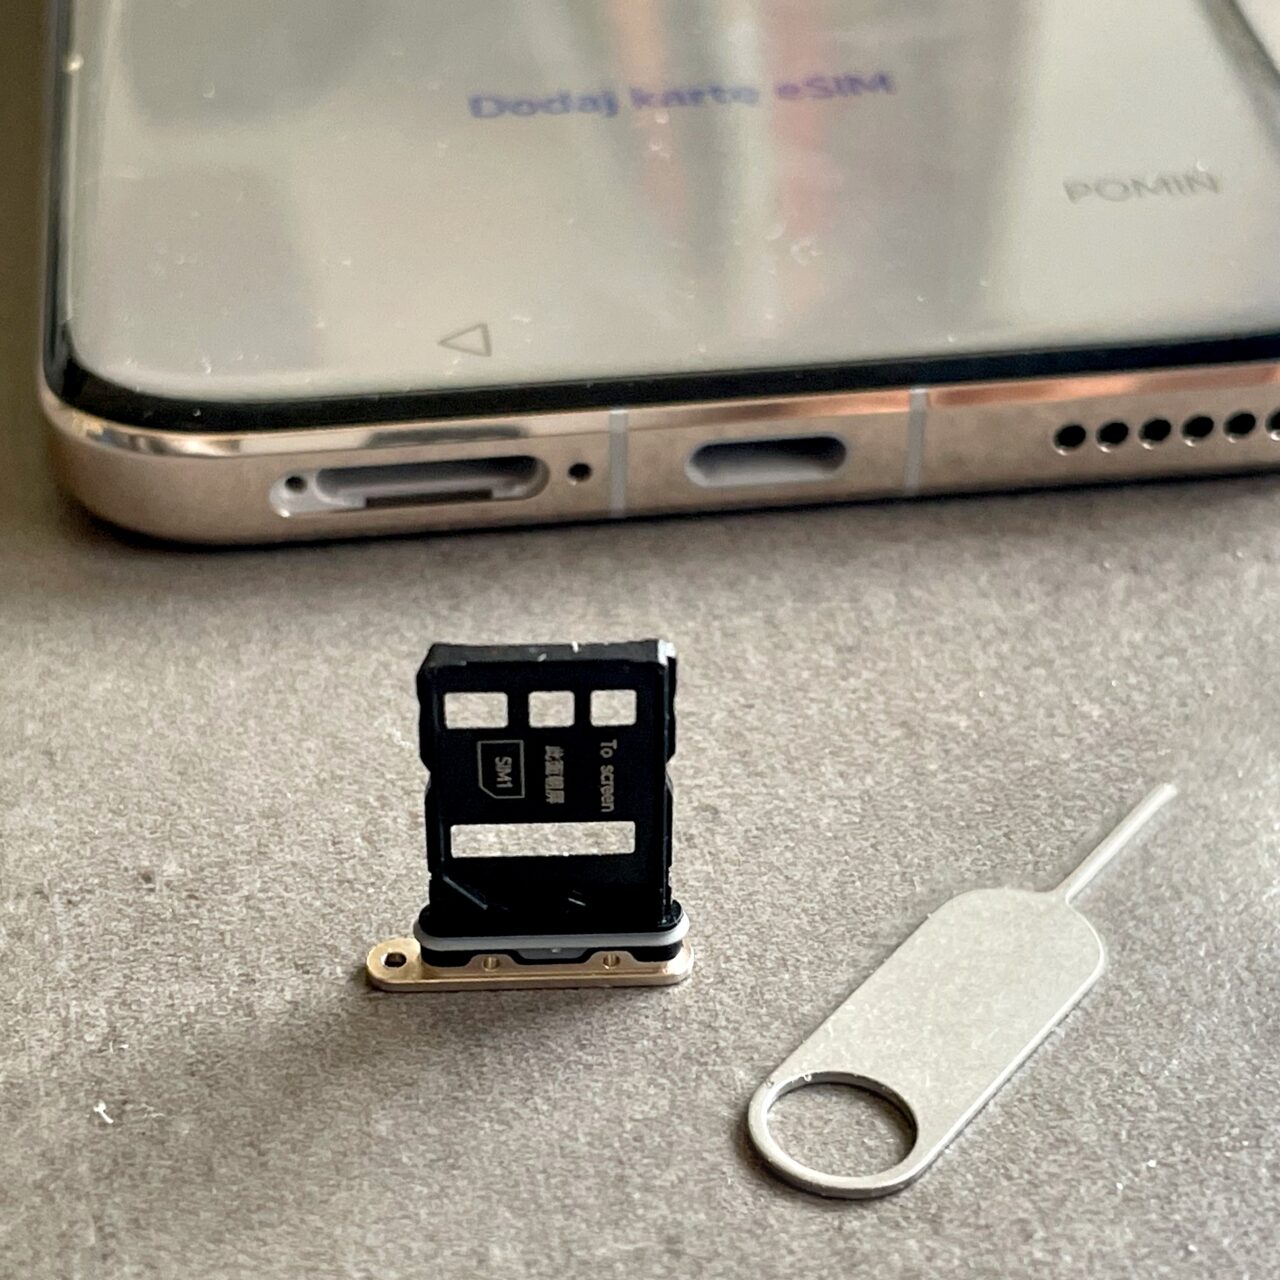 Zdjęcie smartfona z otwartą szufladką na karty SIM i eSIM oraz leżącą obok metalową kluczyk do wyjmowania szufladki.